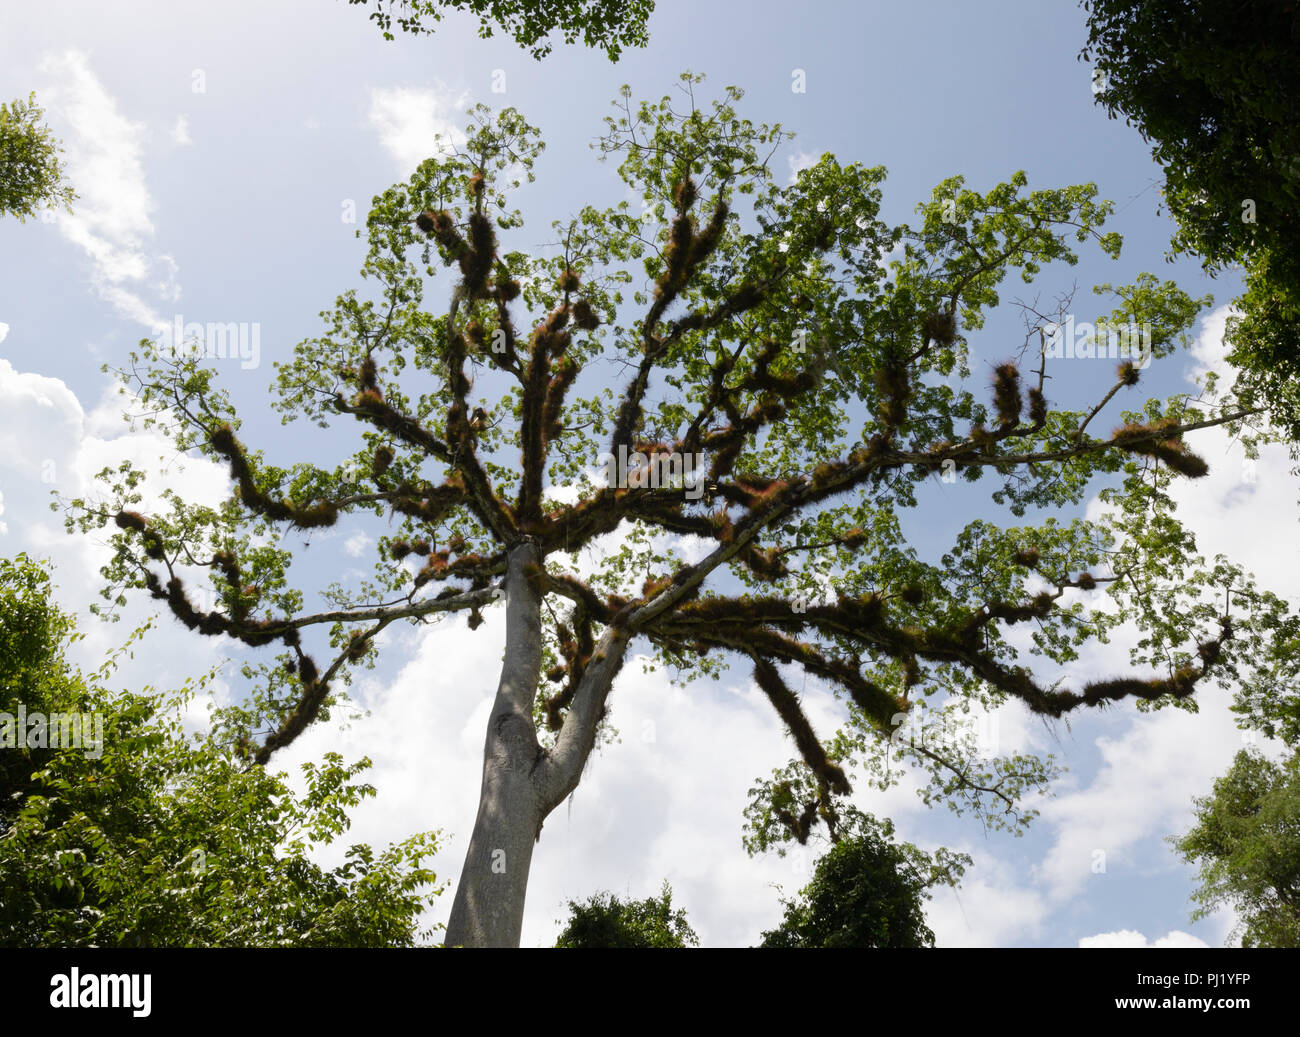 Ceiba tree, Tikal National Park, Guatemala Stock Photo